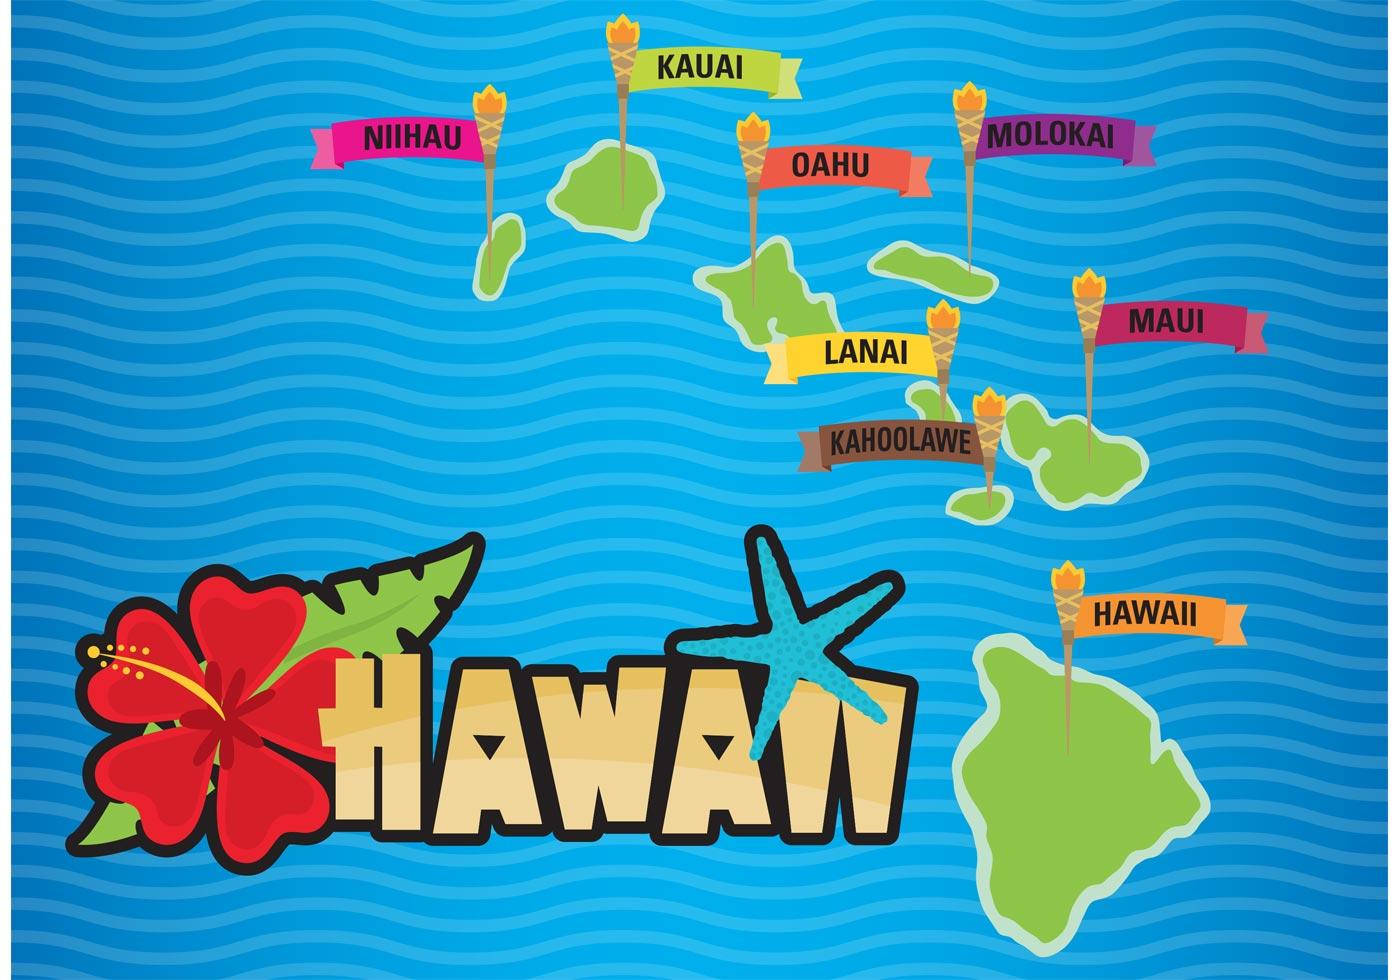 Гавайи какая страна. Гавайи на карте. Остров Гавайи на карте. Карта Гавайских островов для детей. Гавайская вечеринка плакат.